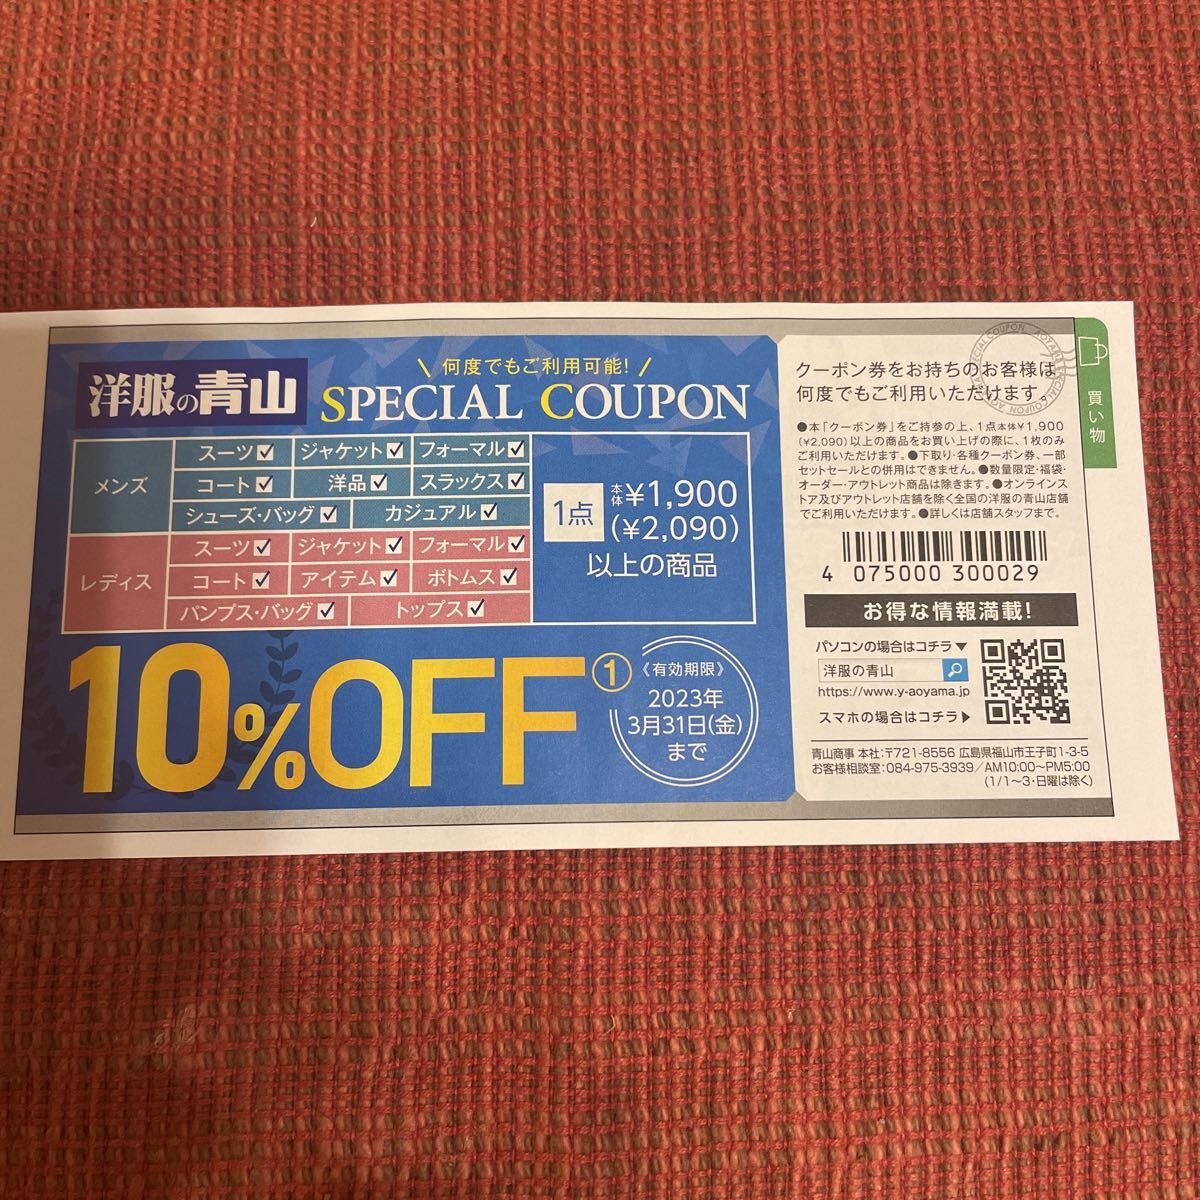 青山 クーポン quality order shitate 【お得】 51.0%OFF